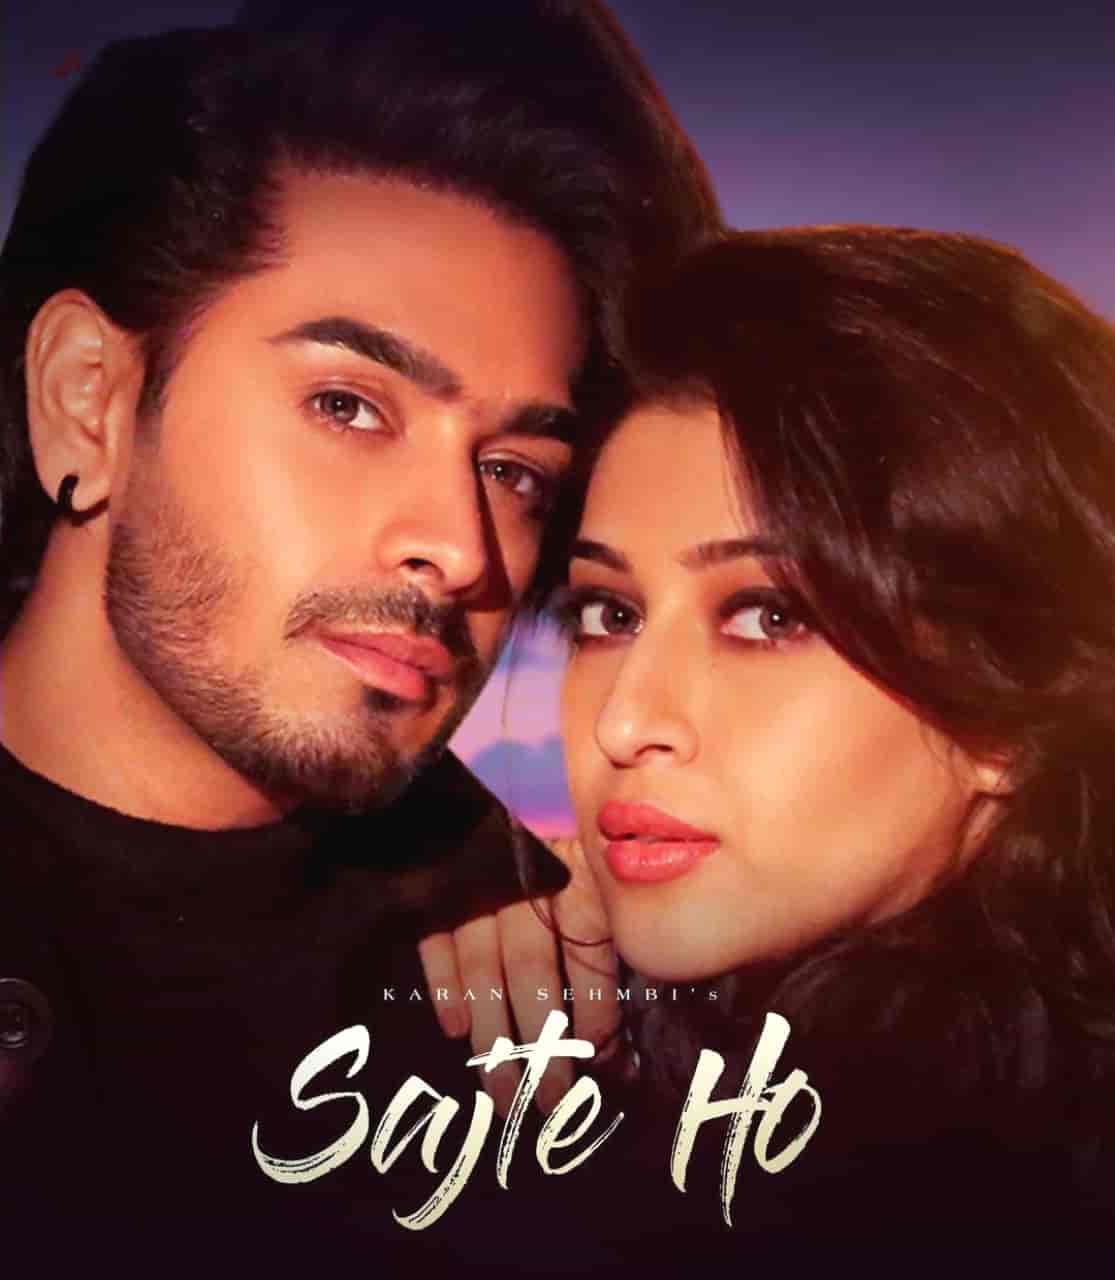 Sajte Ho Hindi Song Image Features Karan Sehmbi And Sonarika Bhadoria